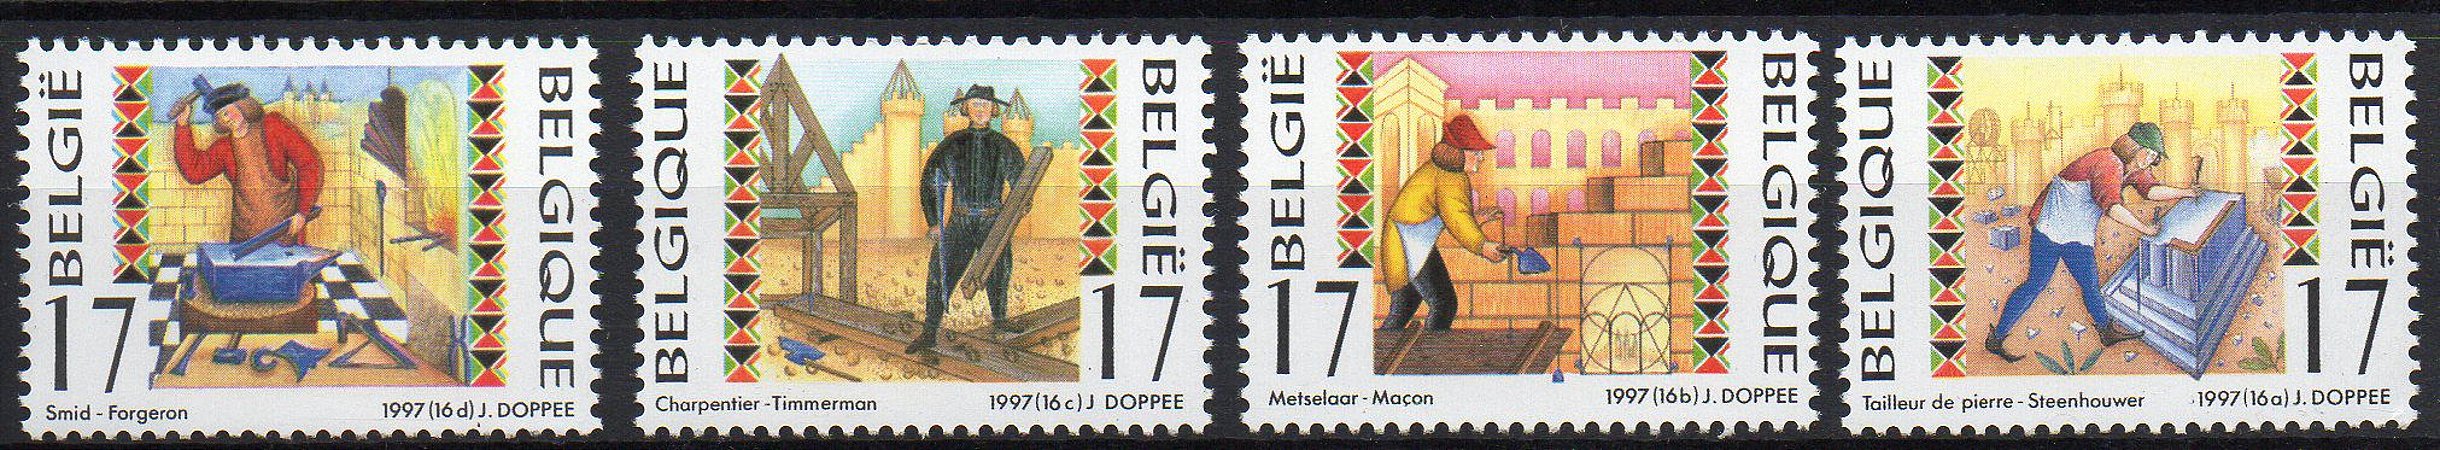 1997 Bélgica - serie Artesões - simbologia maçônica